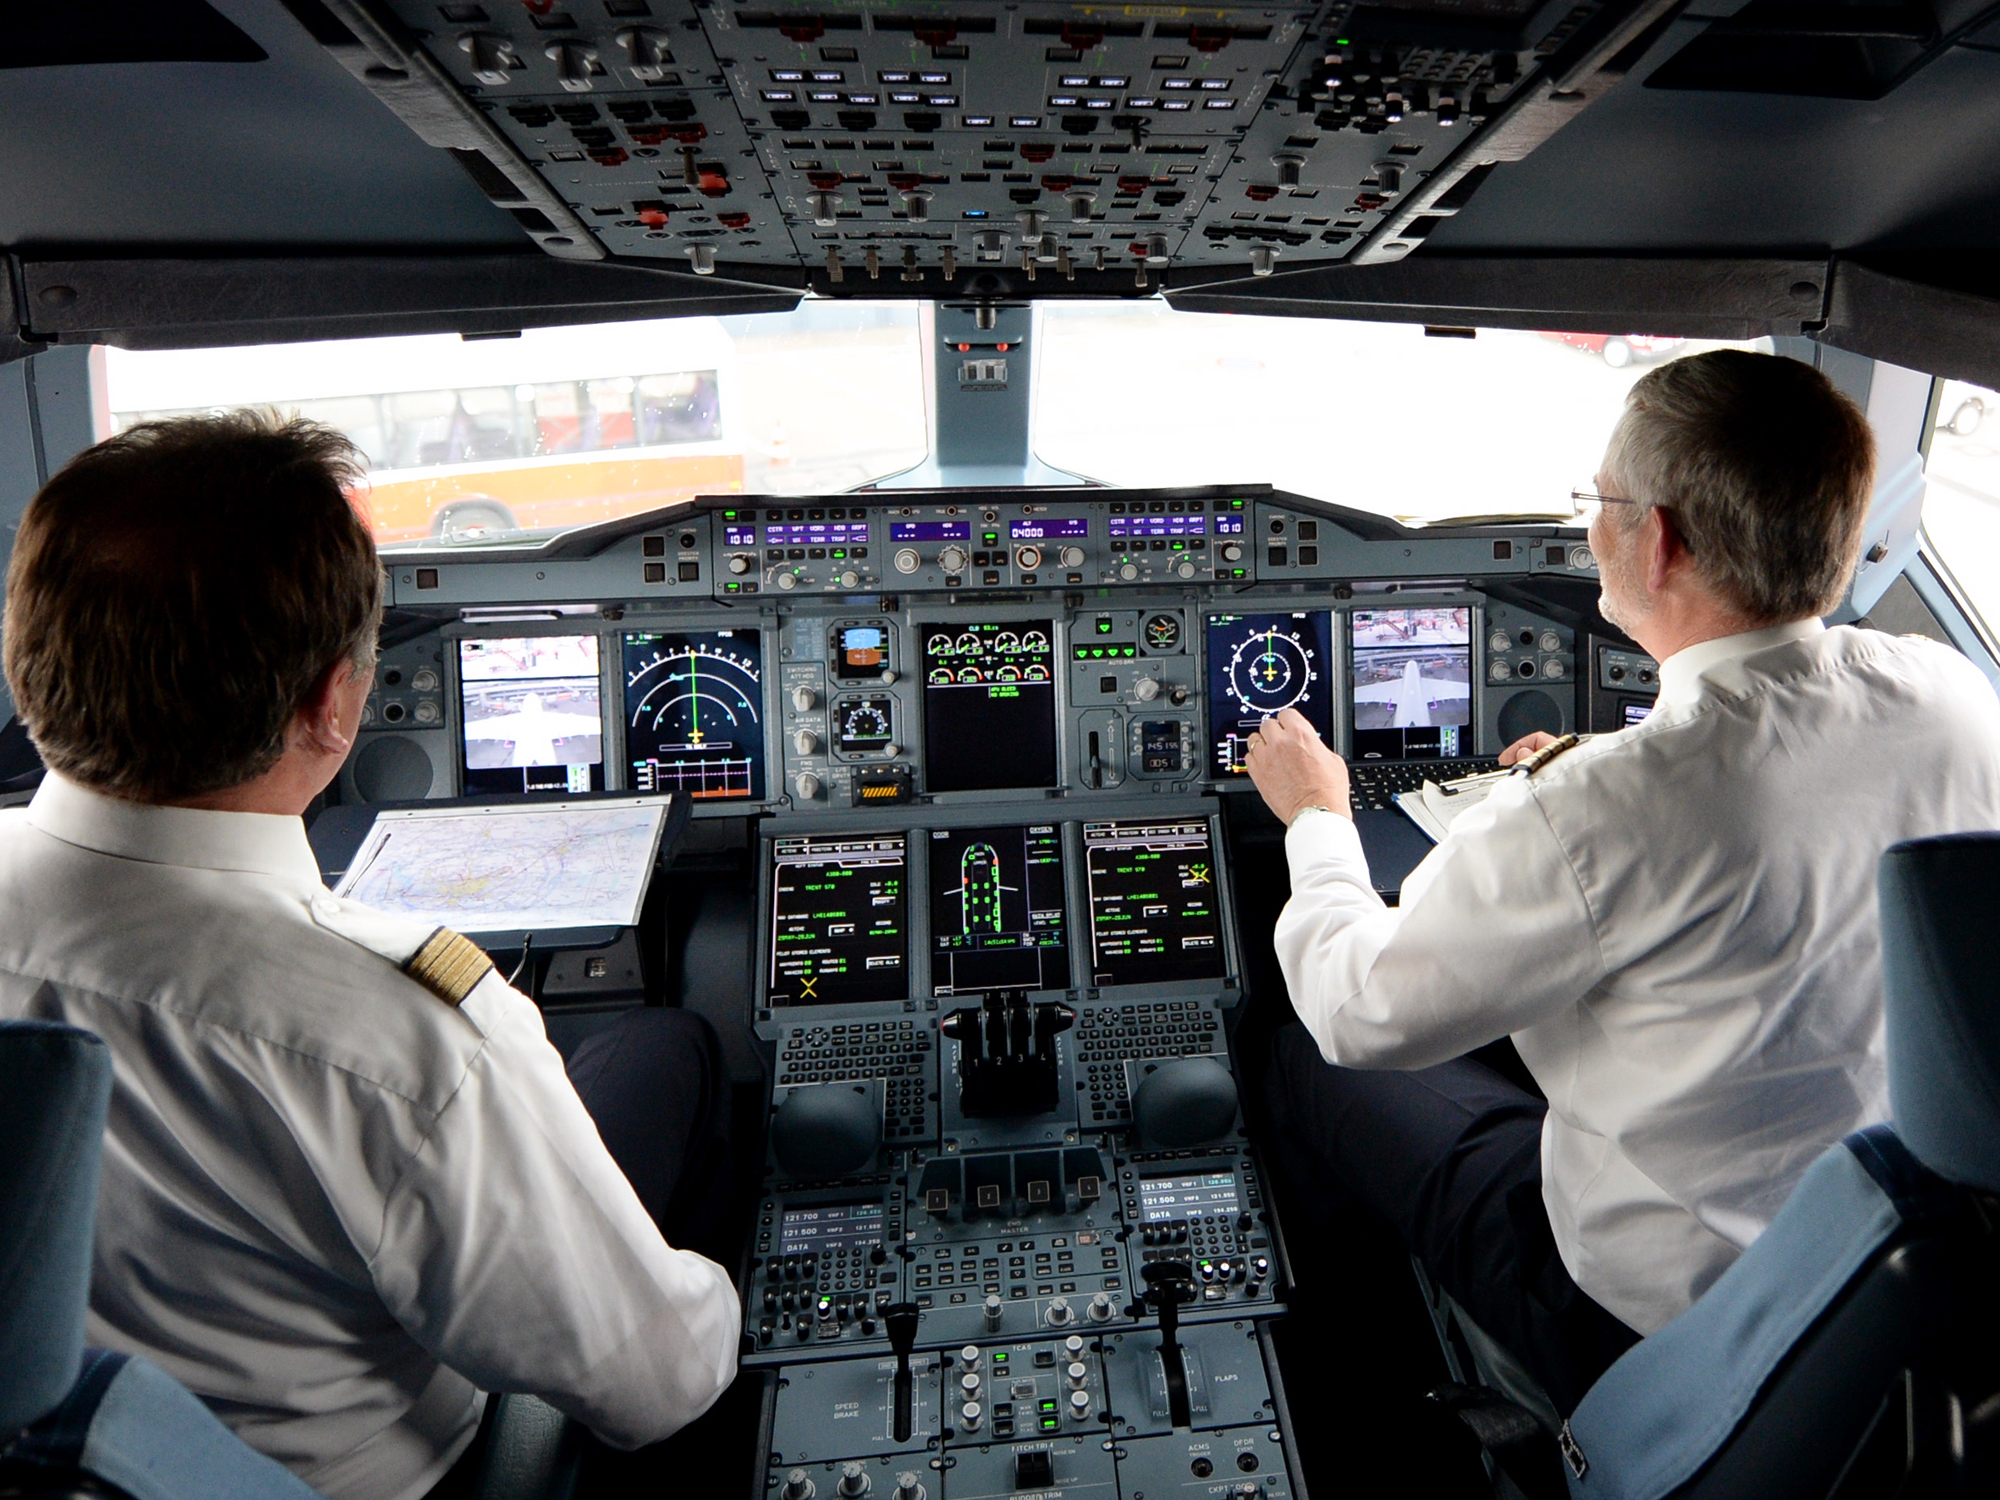 Autonomes Fliegen: Skepsis gegenüber Flugzeugen ohne Pilot - Onlineportal  von IT Management